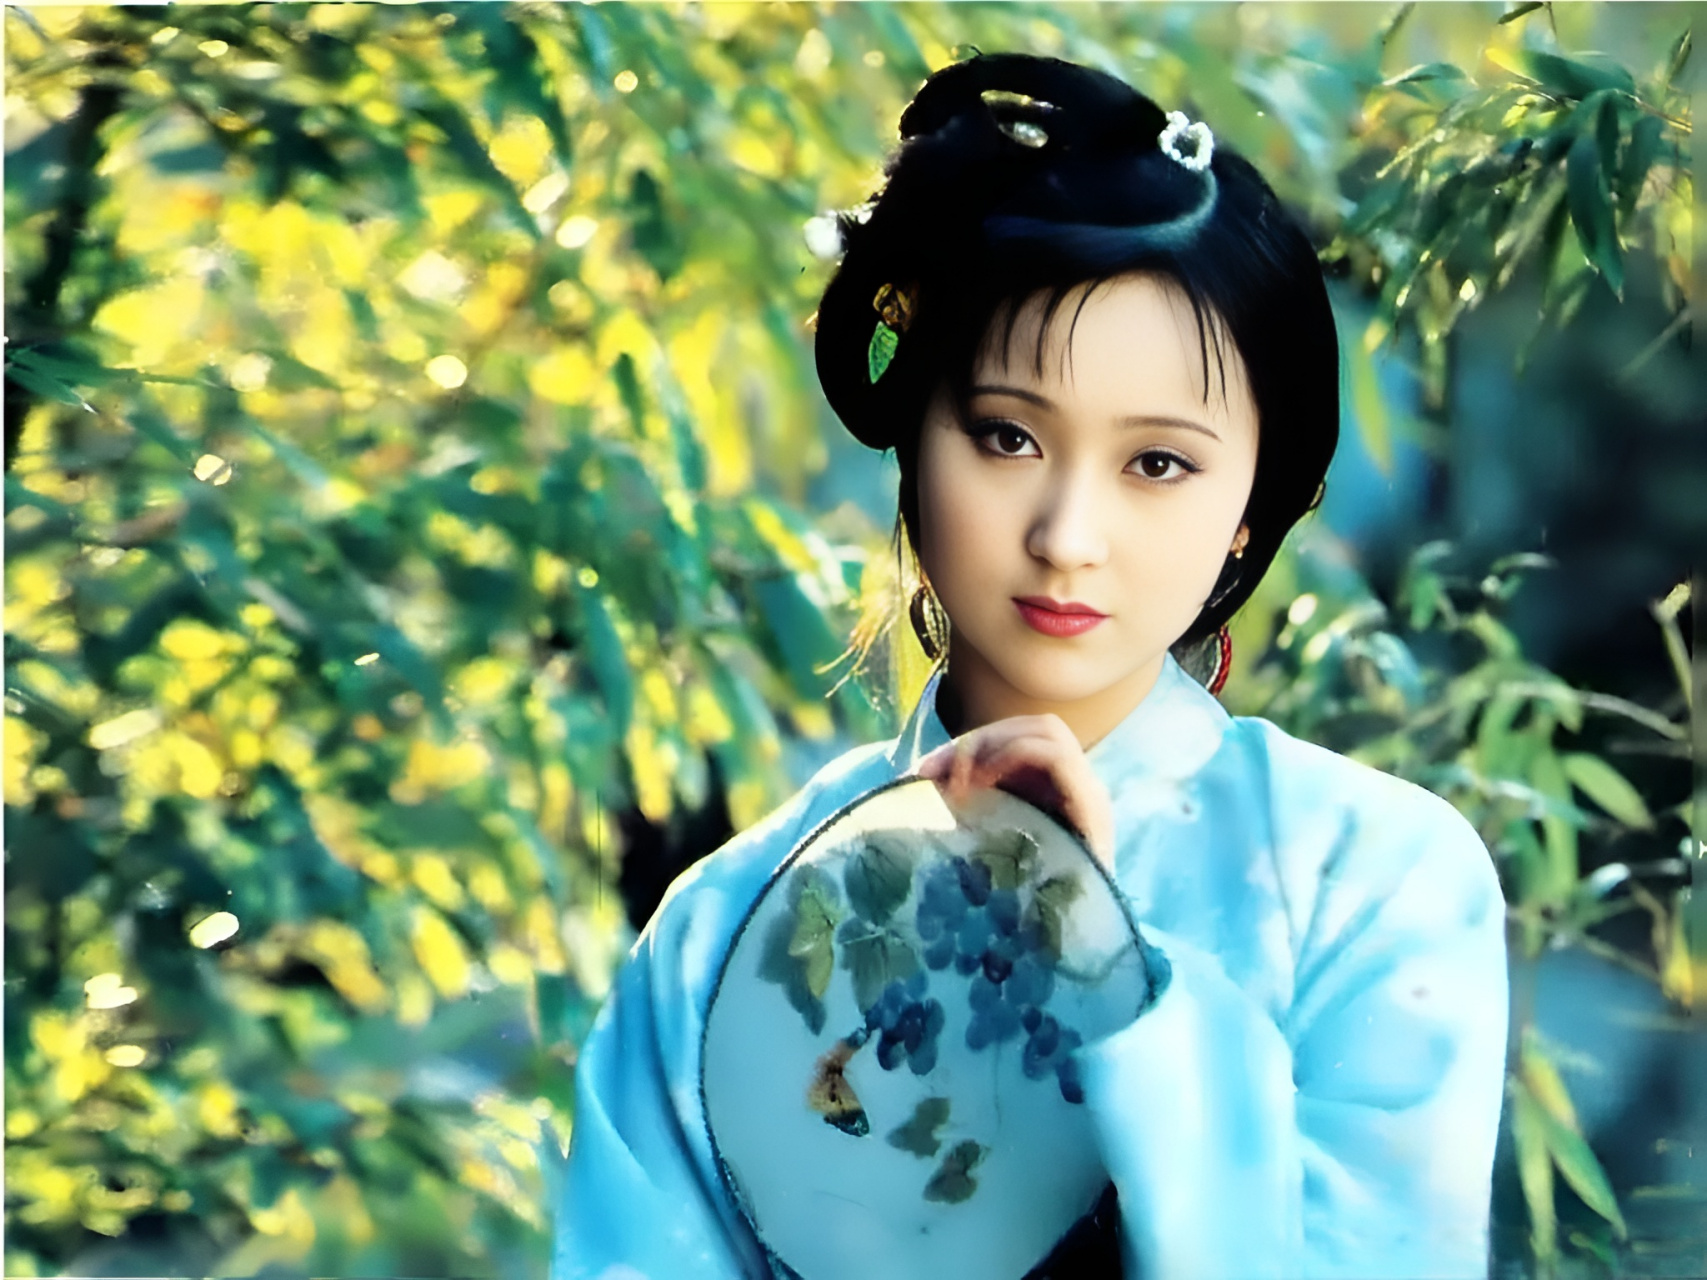 1984年,18岁的陈晓旭进入《红楼梦》剧组饰演林黛玉,除了给了她爆红的